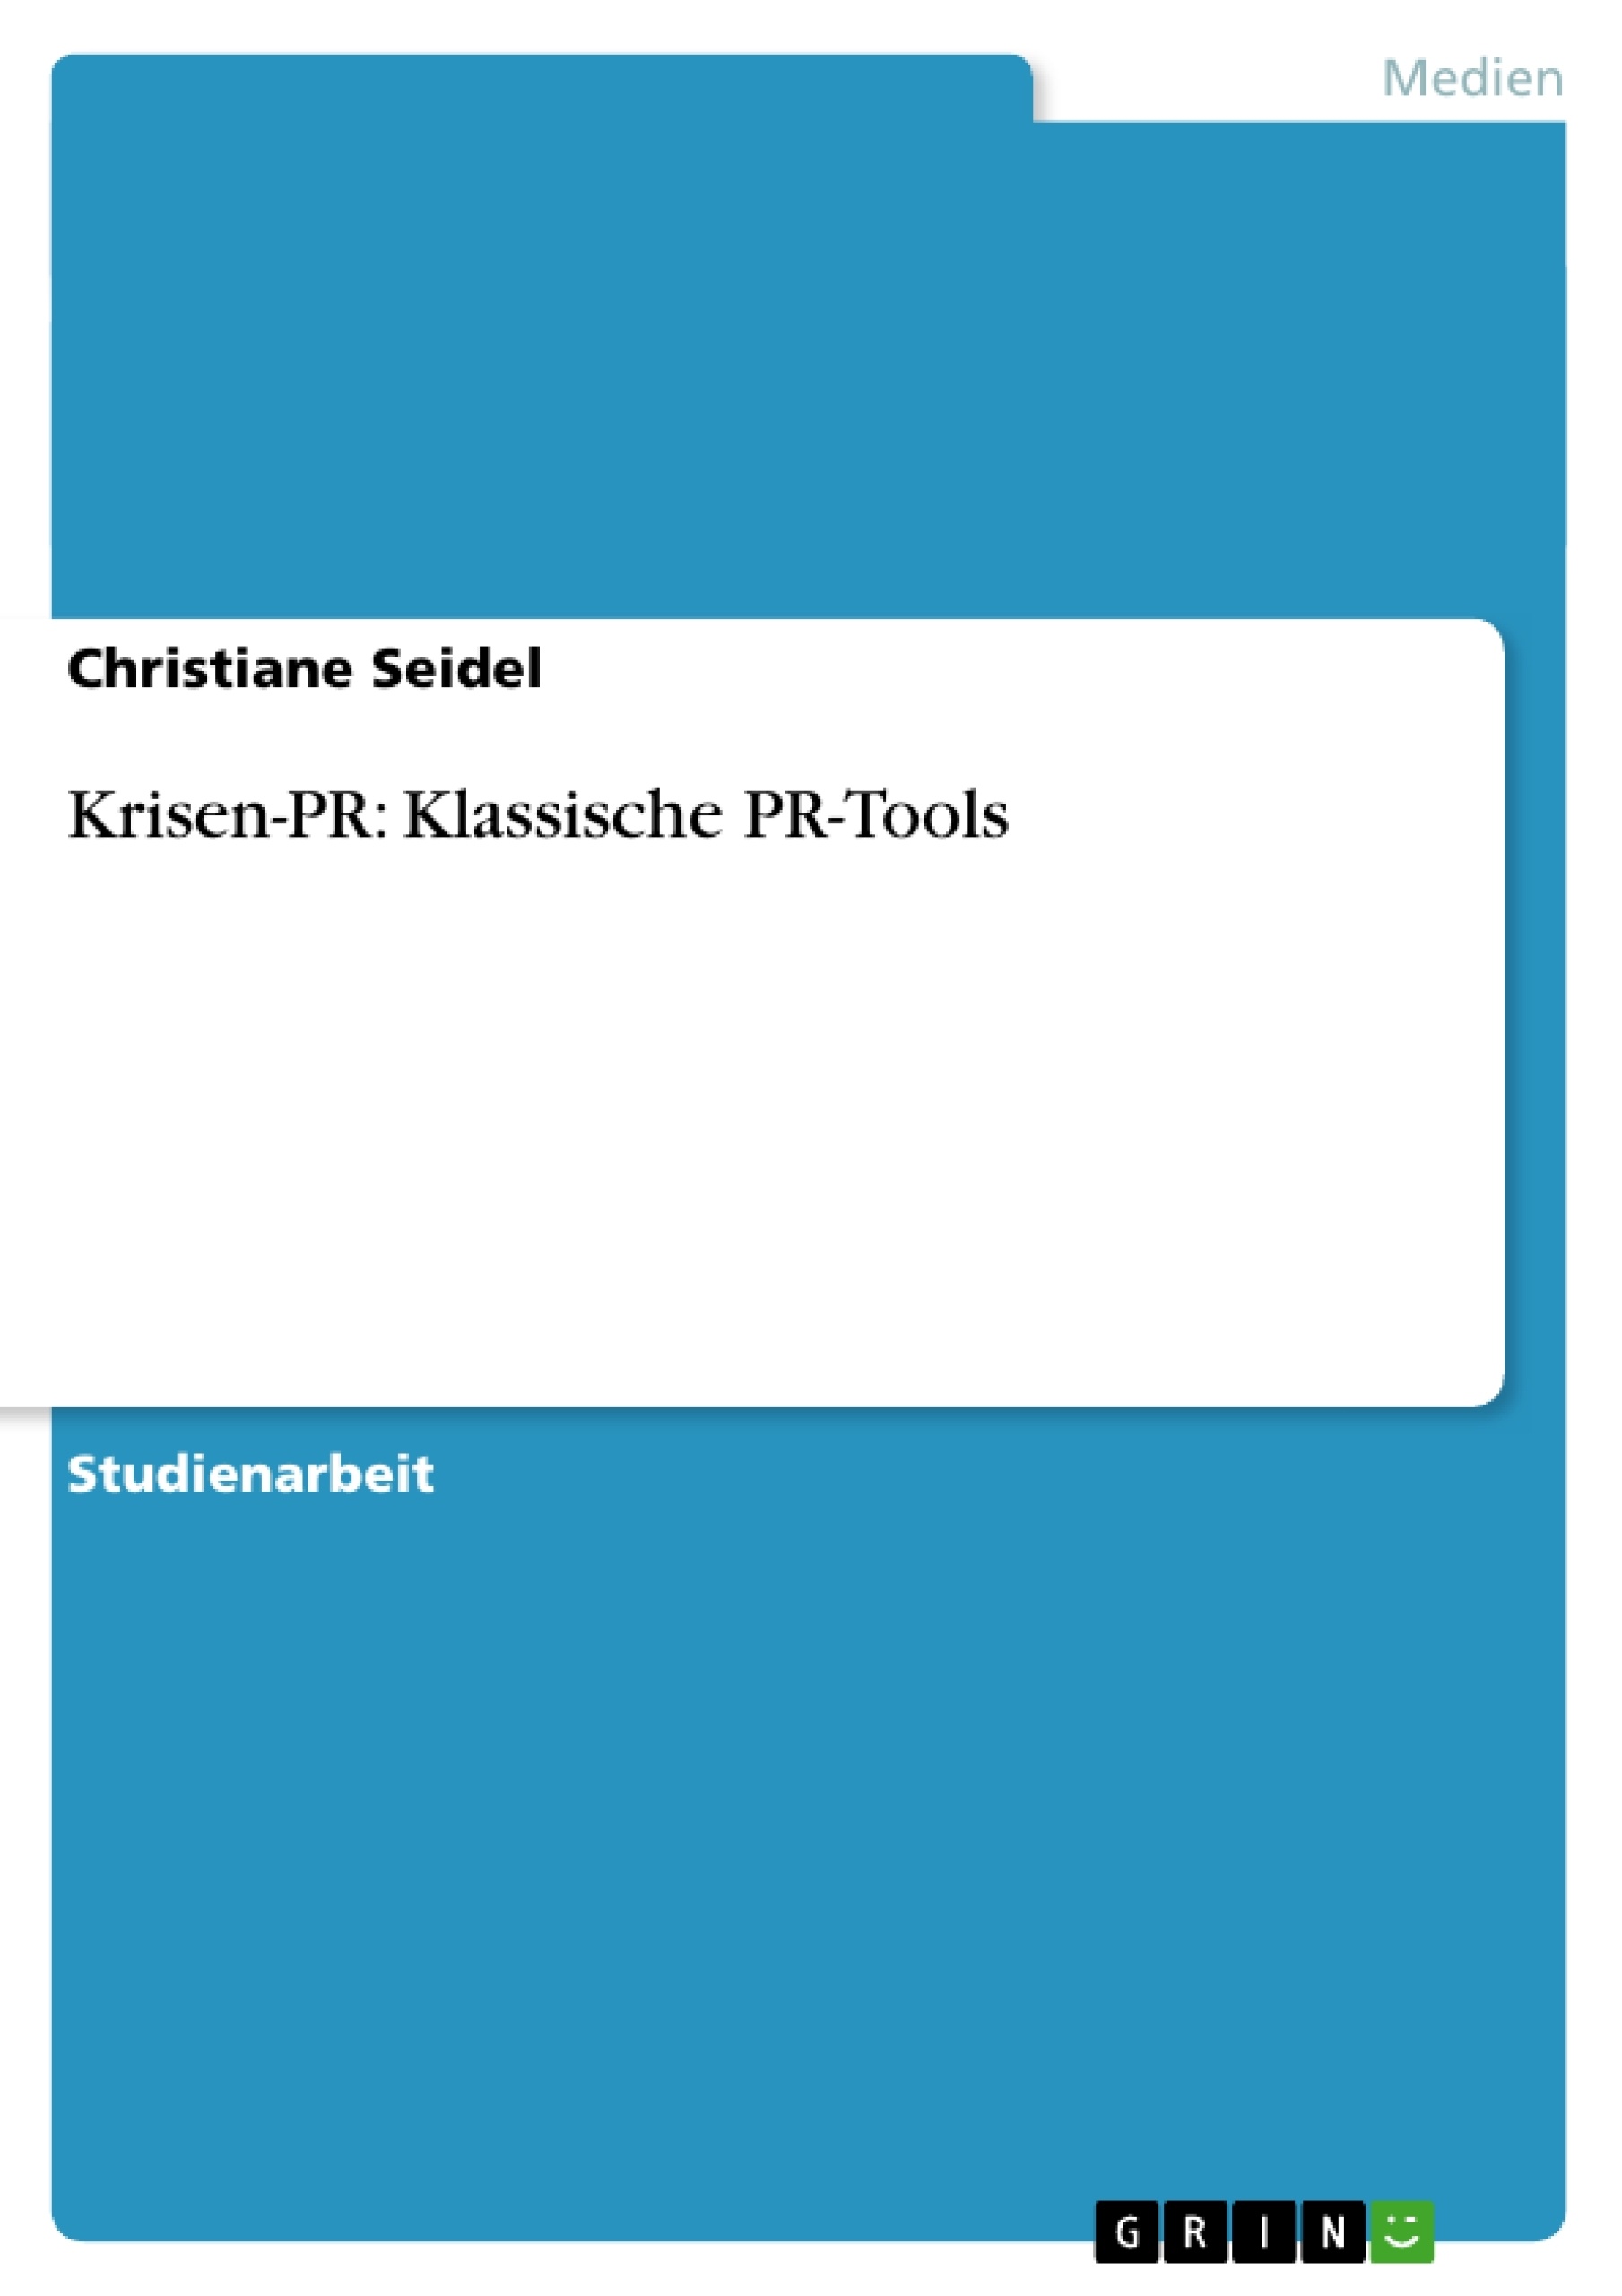 Title: Krisen-PR: Klassische PR-Tools